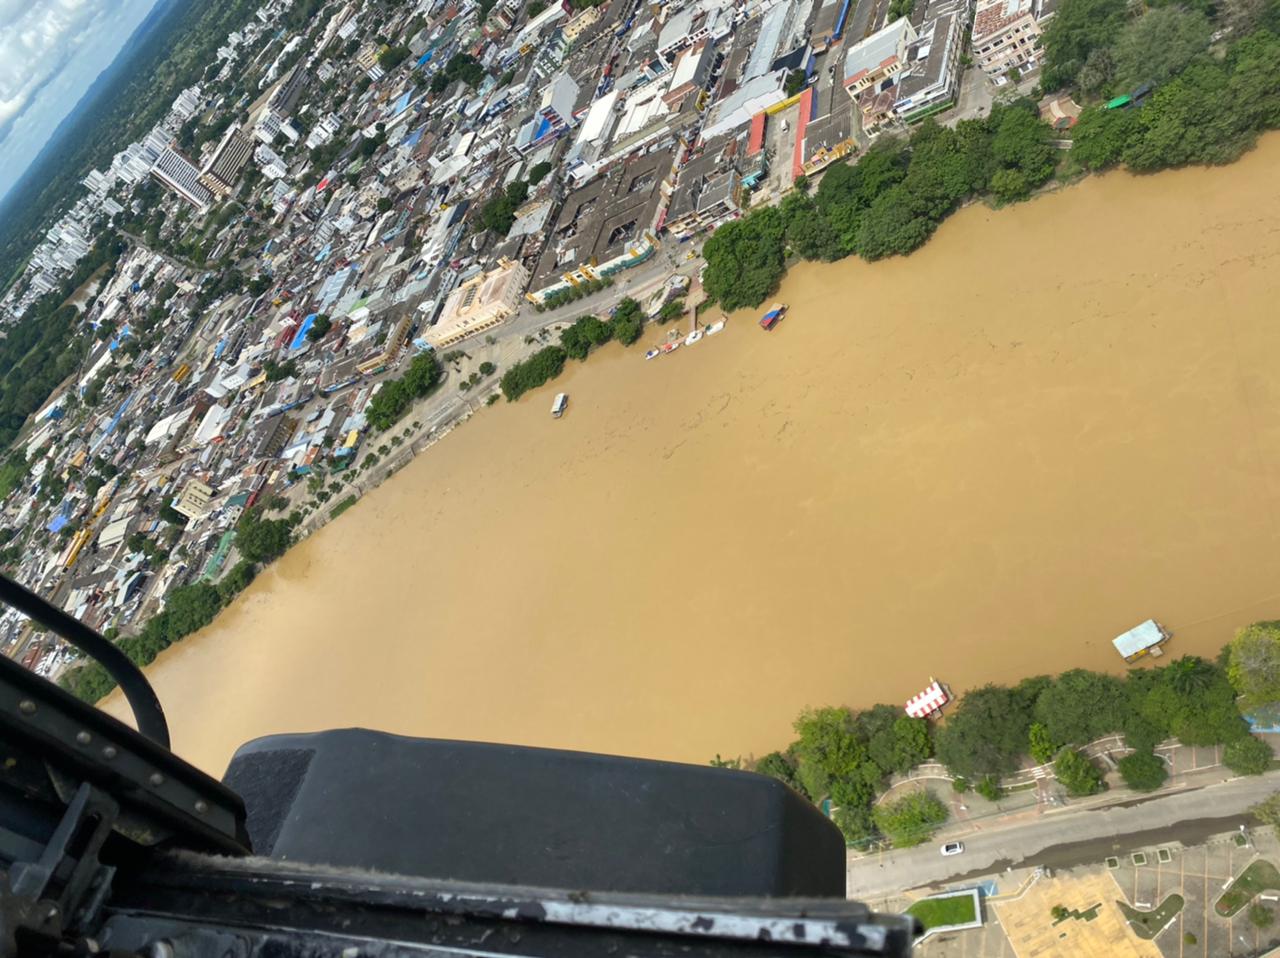 Con sobrevuelos de monitoreo en Antioquia y Córdoba, su Fuerza Aérea brinda seguridad a sus pobladores